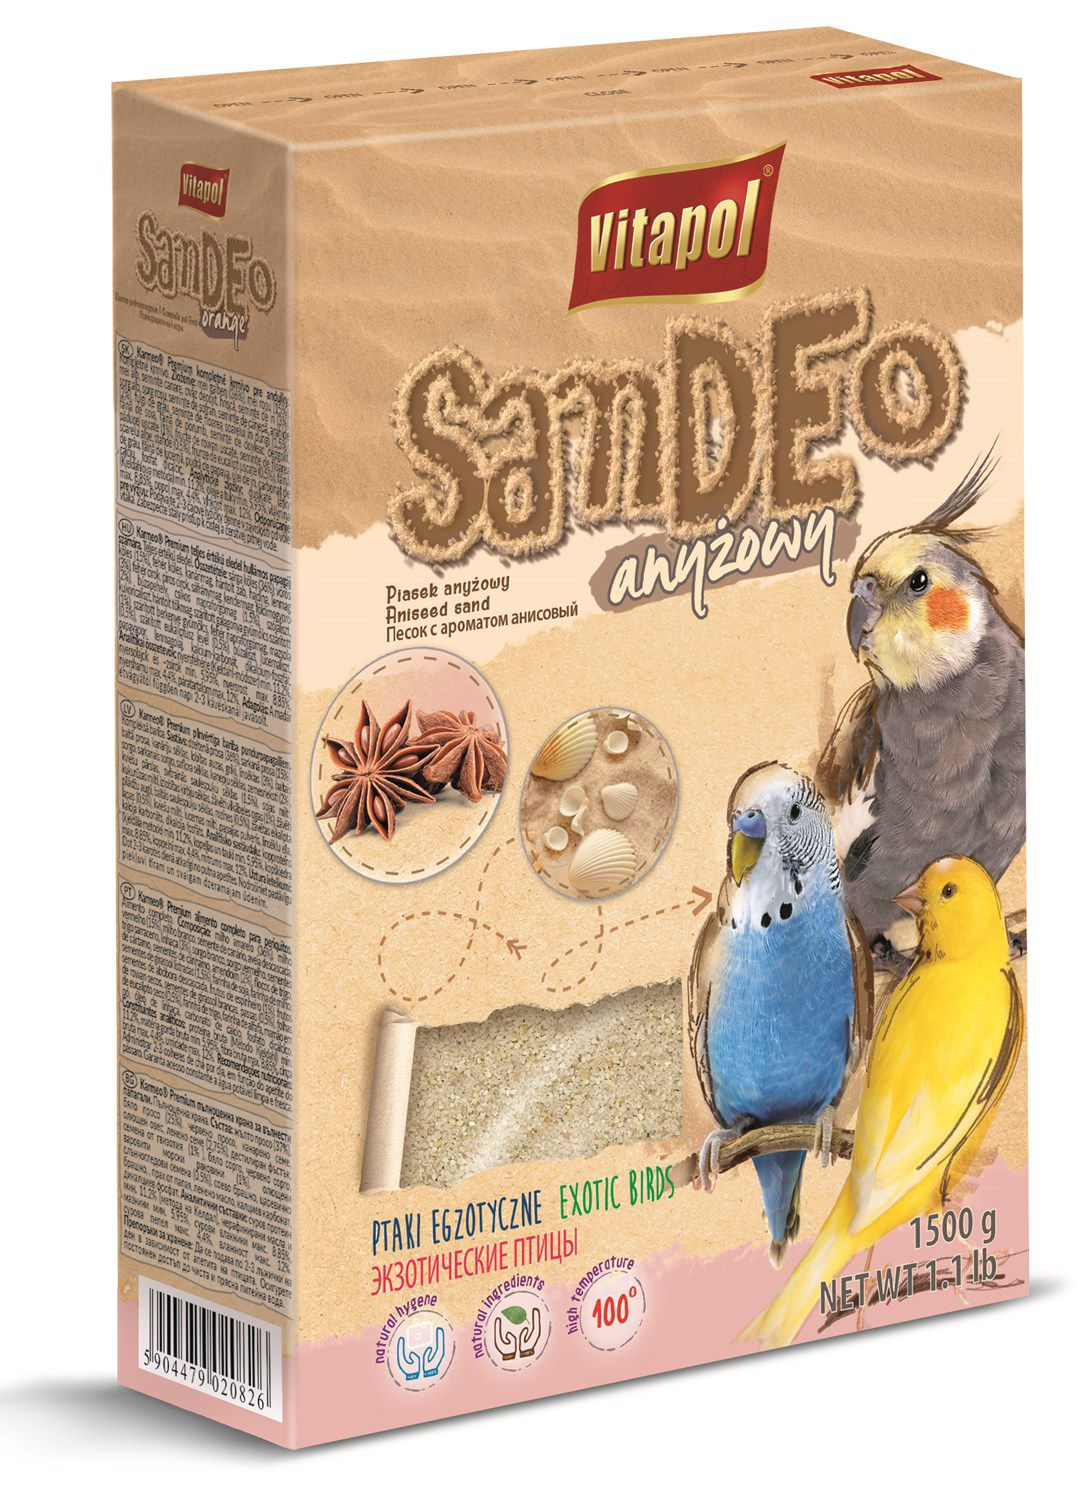 Vitapol - homok ánizzsal madarak számára - 1,5kg